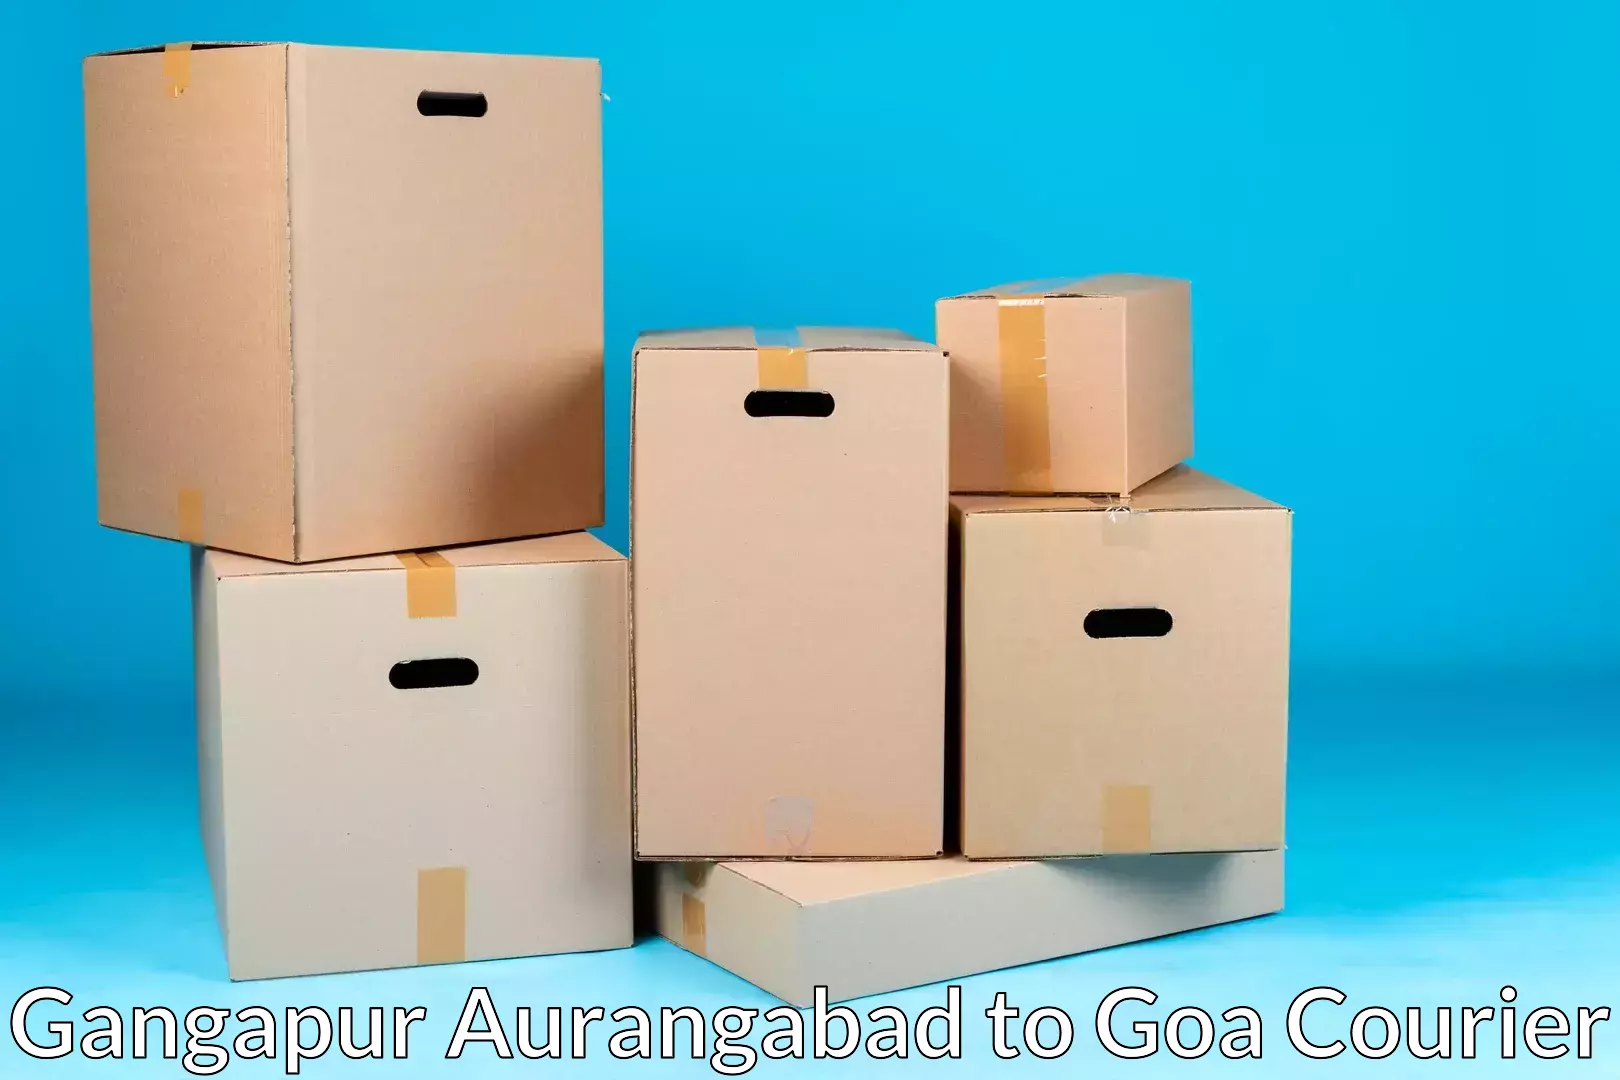 Professional moving company Gangapur Aurangabad to Canacona